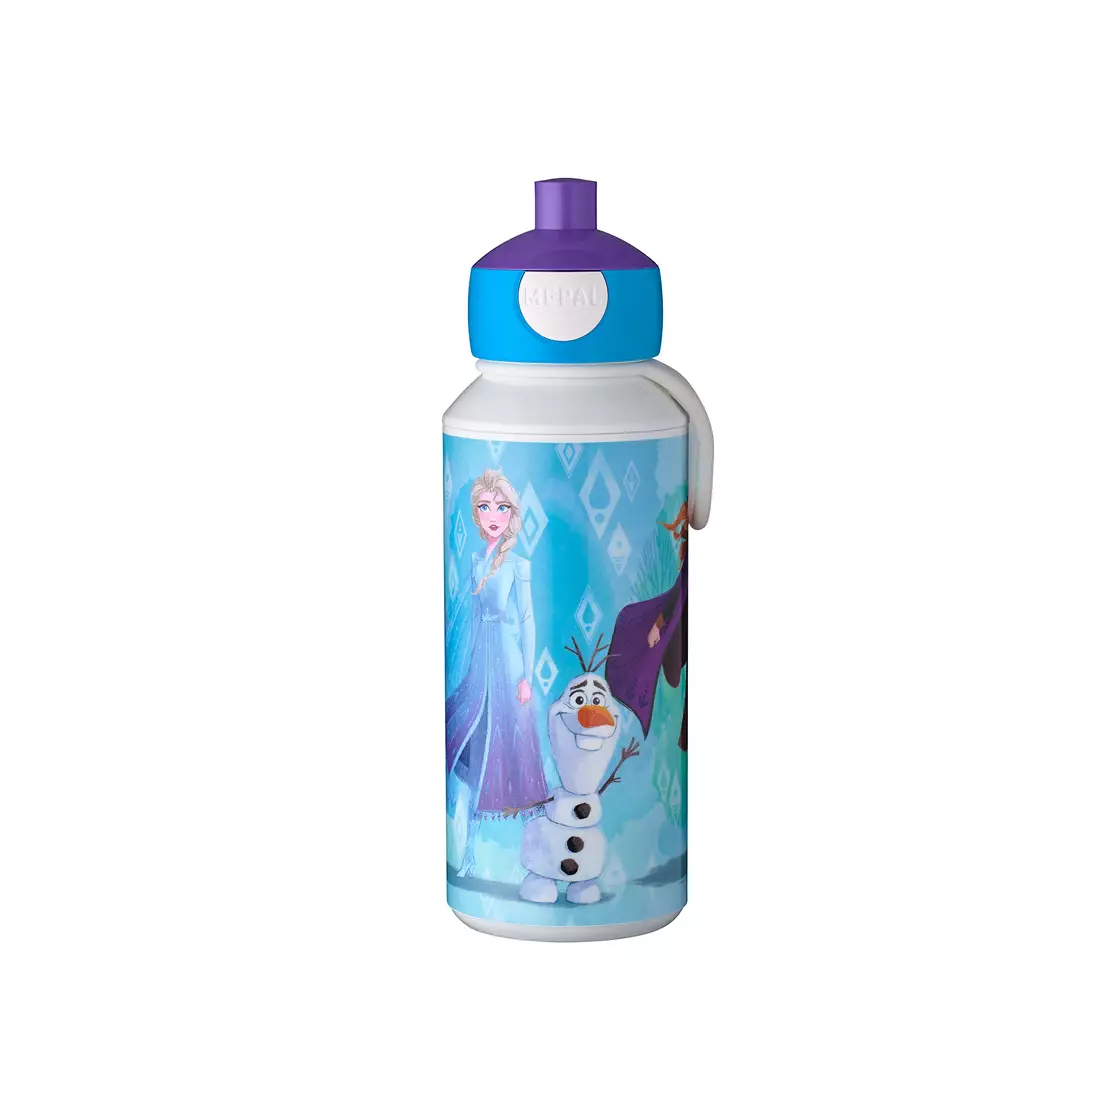 MEPAl CAMPUS POP-UP water bottle for children 400 ml, frozen 2